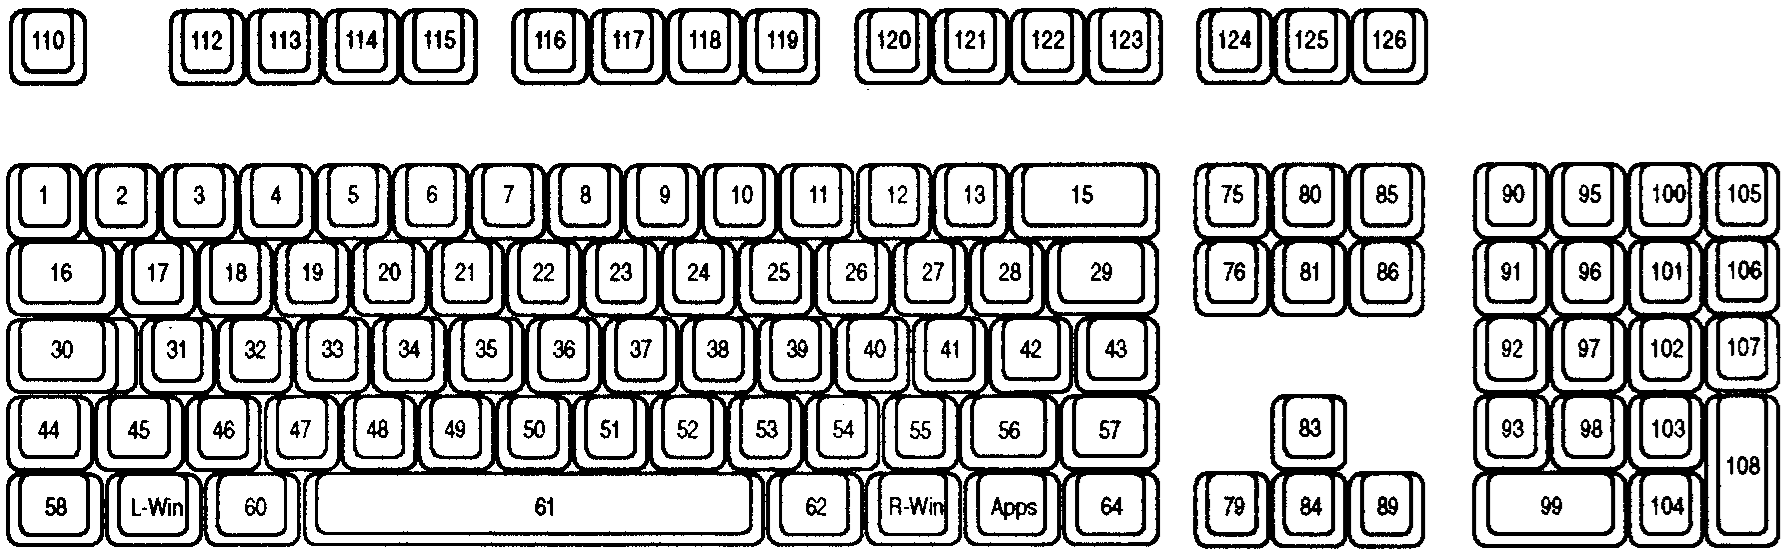 Кнопка дополнительные параметры на клавиатуре